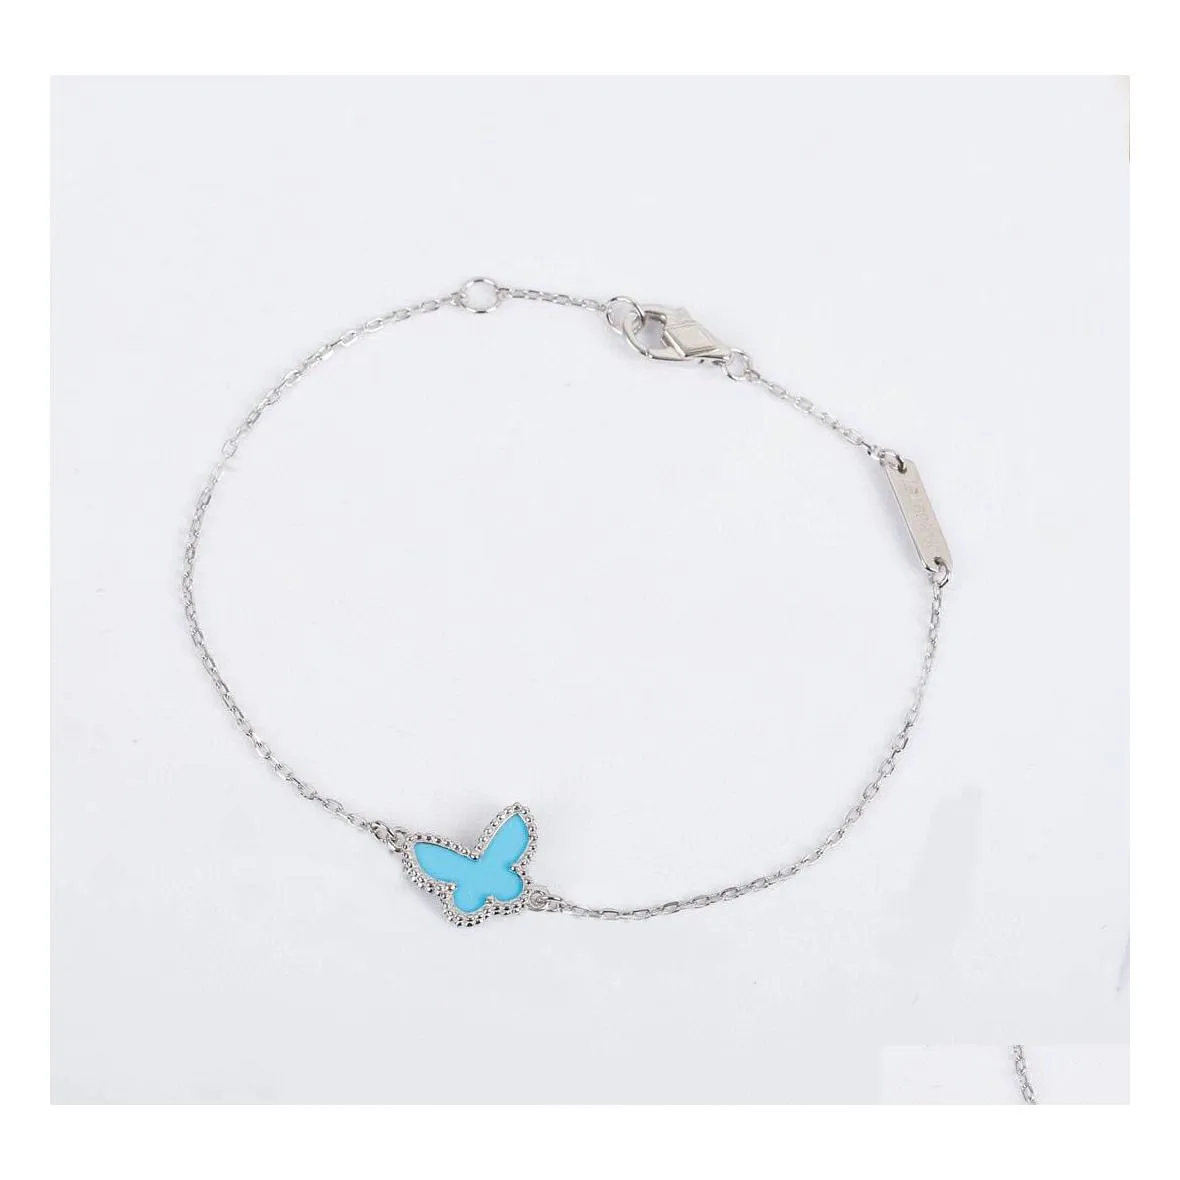 Bedelarmbanden S925 Sier hanger armband met blauwe vlindervorm in twee kleuren verguld en ruitsluiting voor vrouwen bruiloft juwelier Dh4Zu